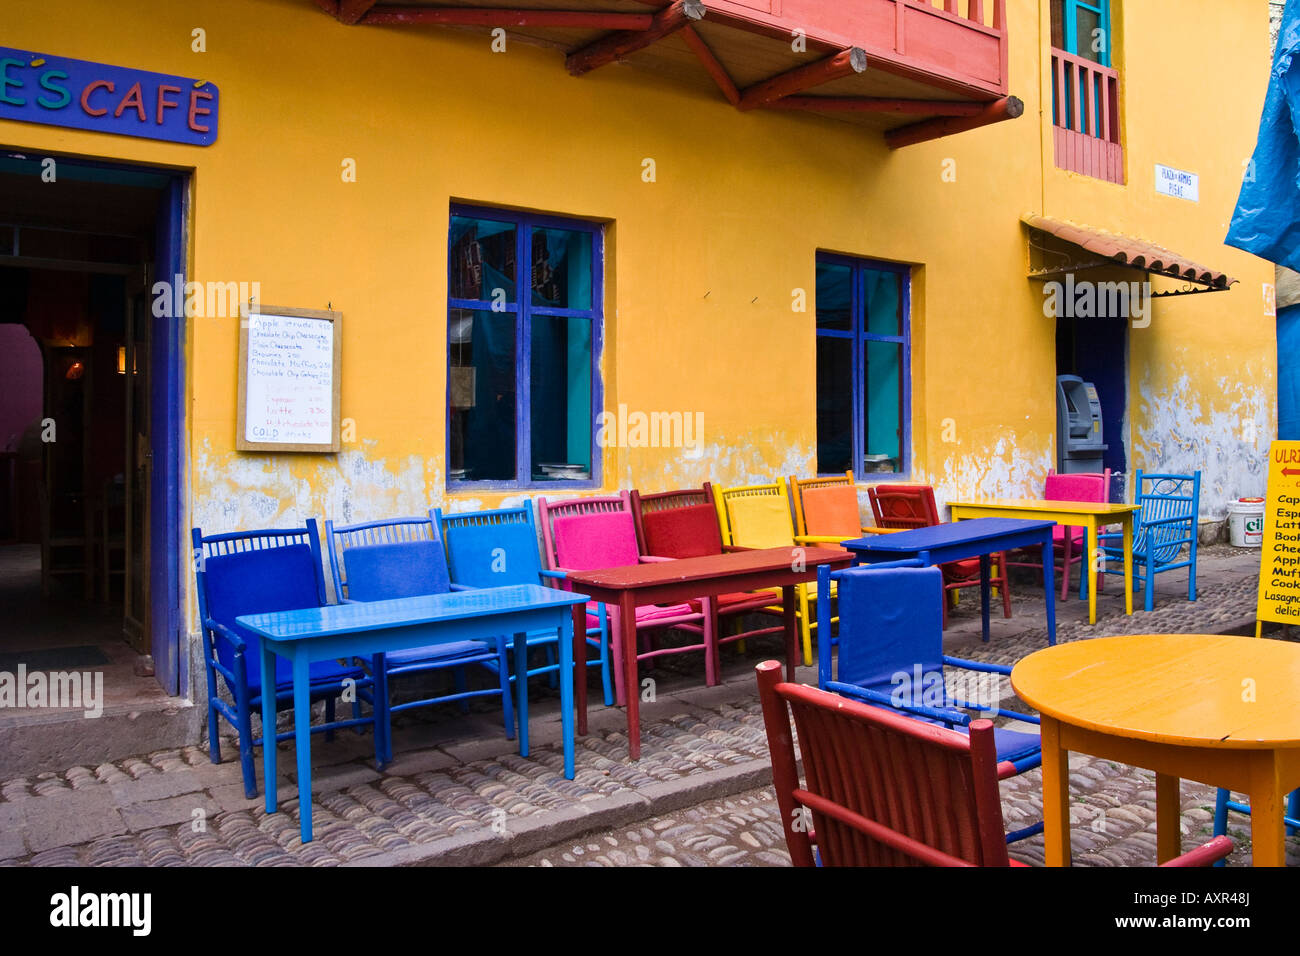 Cafe Restaurant, Pisac Market Square, Plaza de Armas, Pisac, Peru Stock Photo